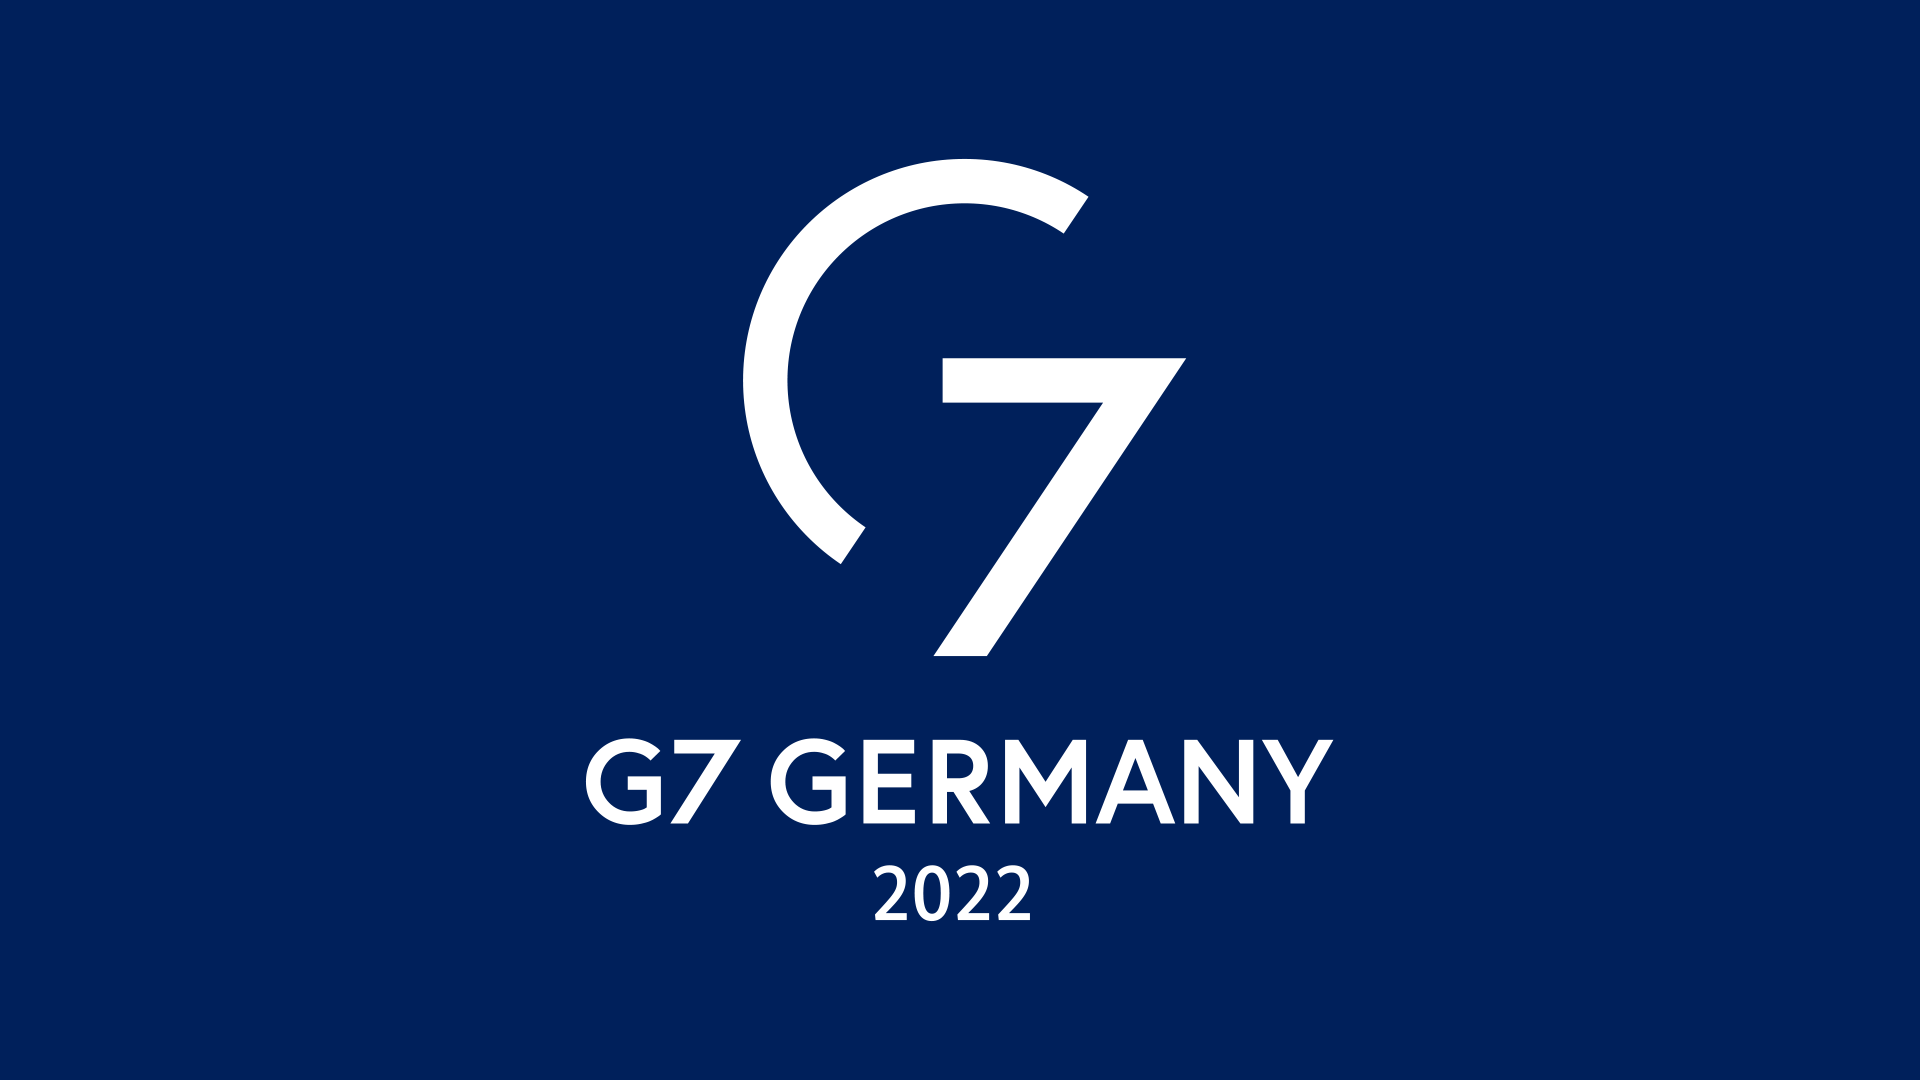 Logo of Germany's G7 Presidency 2022